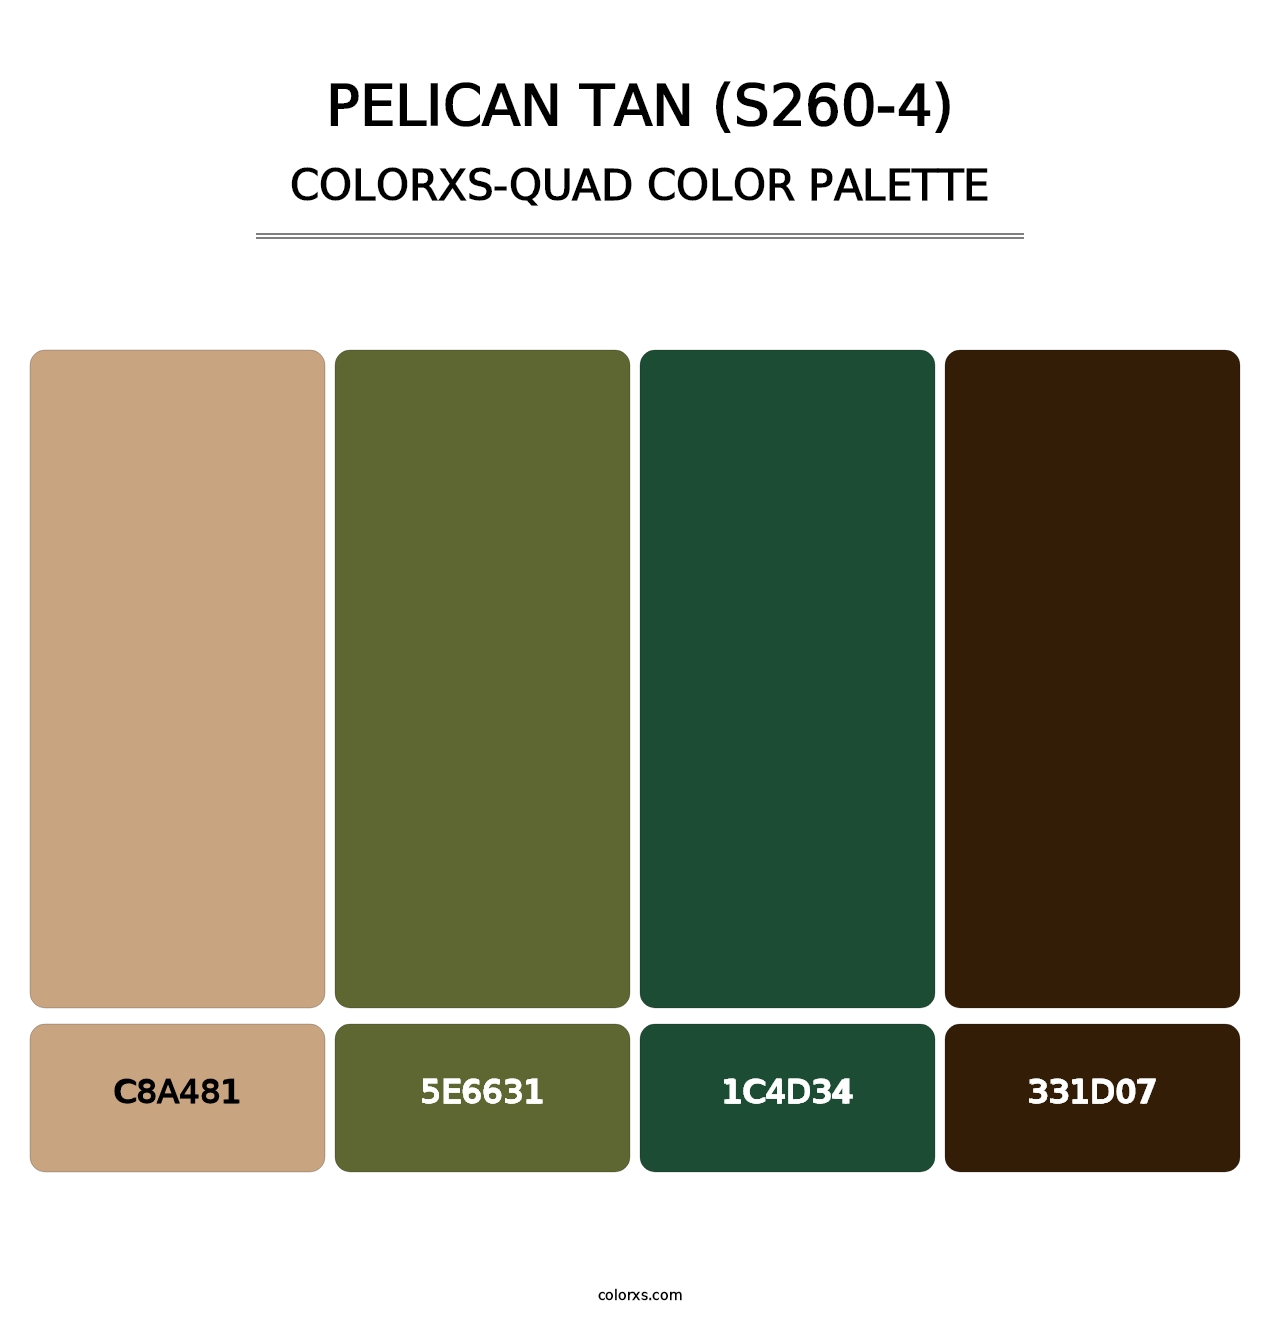 Pelican Tan (S260-4) - Colorxs Quad Palette